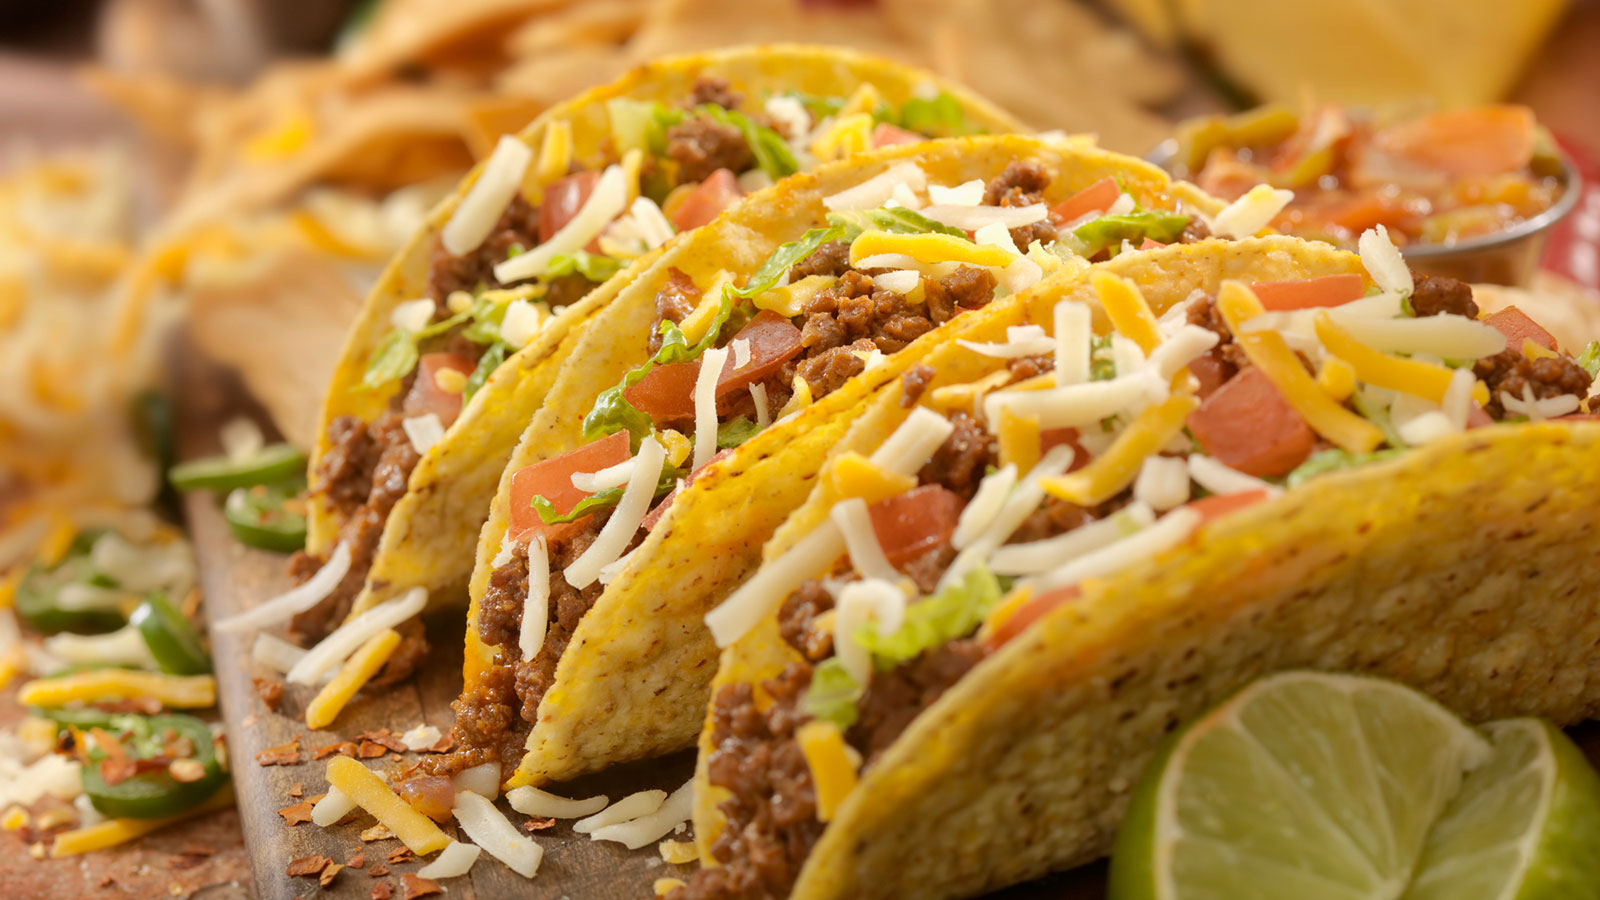 Đặc sản ẩm thực vòng quanh thế giới (P.46) - Tacos (Mexico) : Món ăn đường  phố bắt mắt của người dân xứ Mễ Tây Cơ - HỘI KỶ LỤC GIA VIỆT